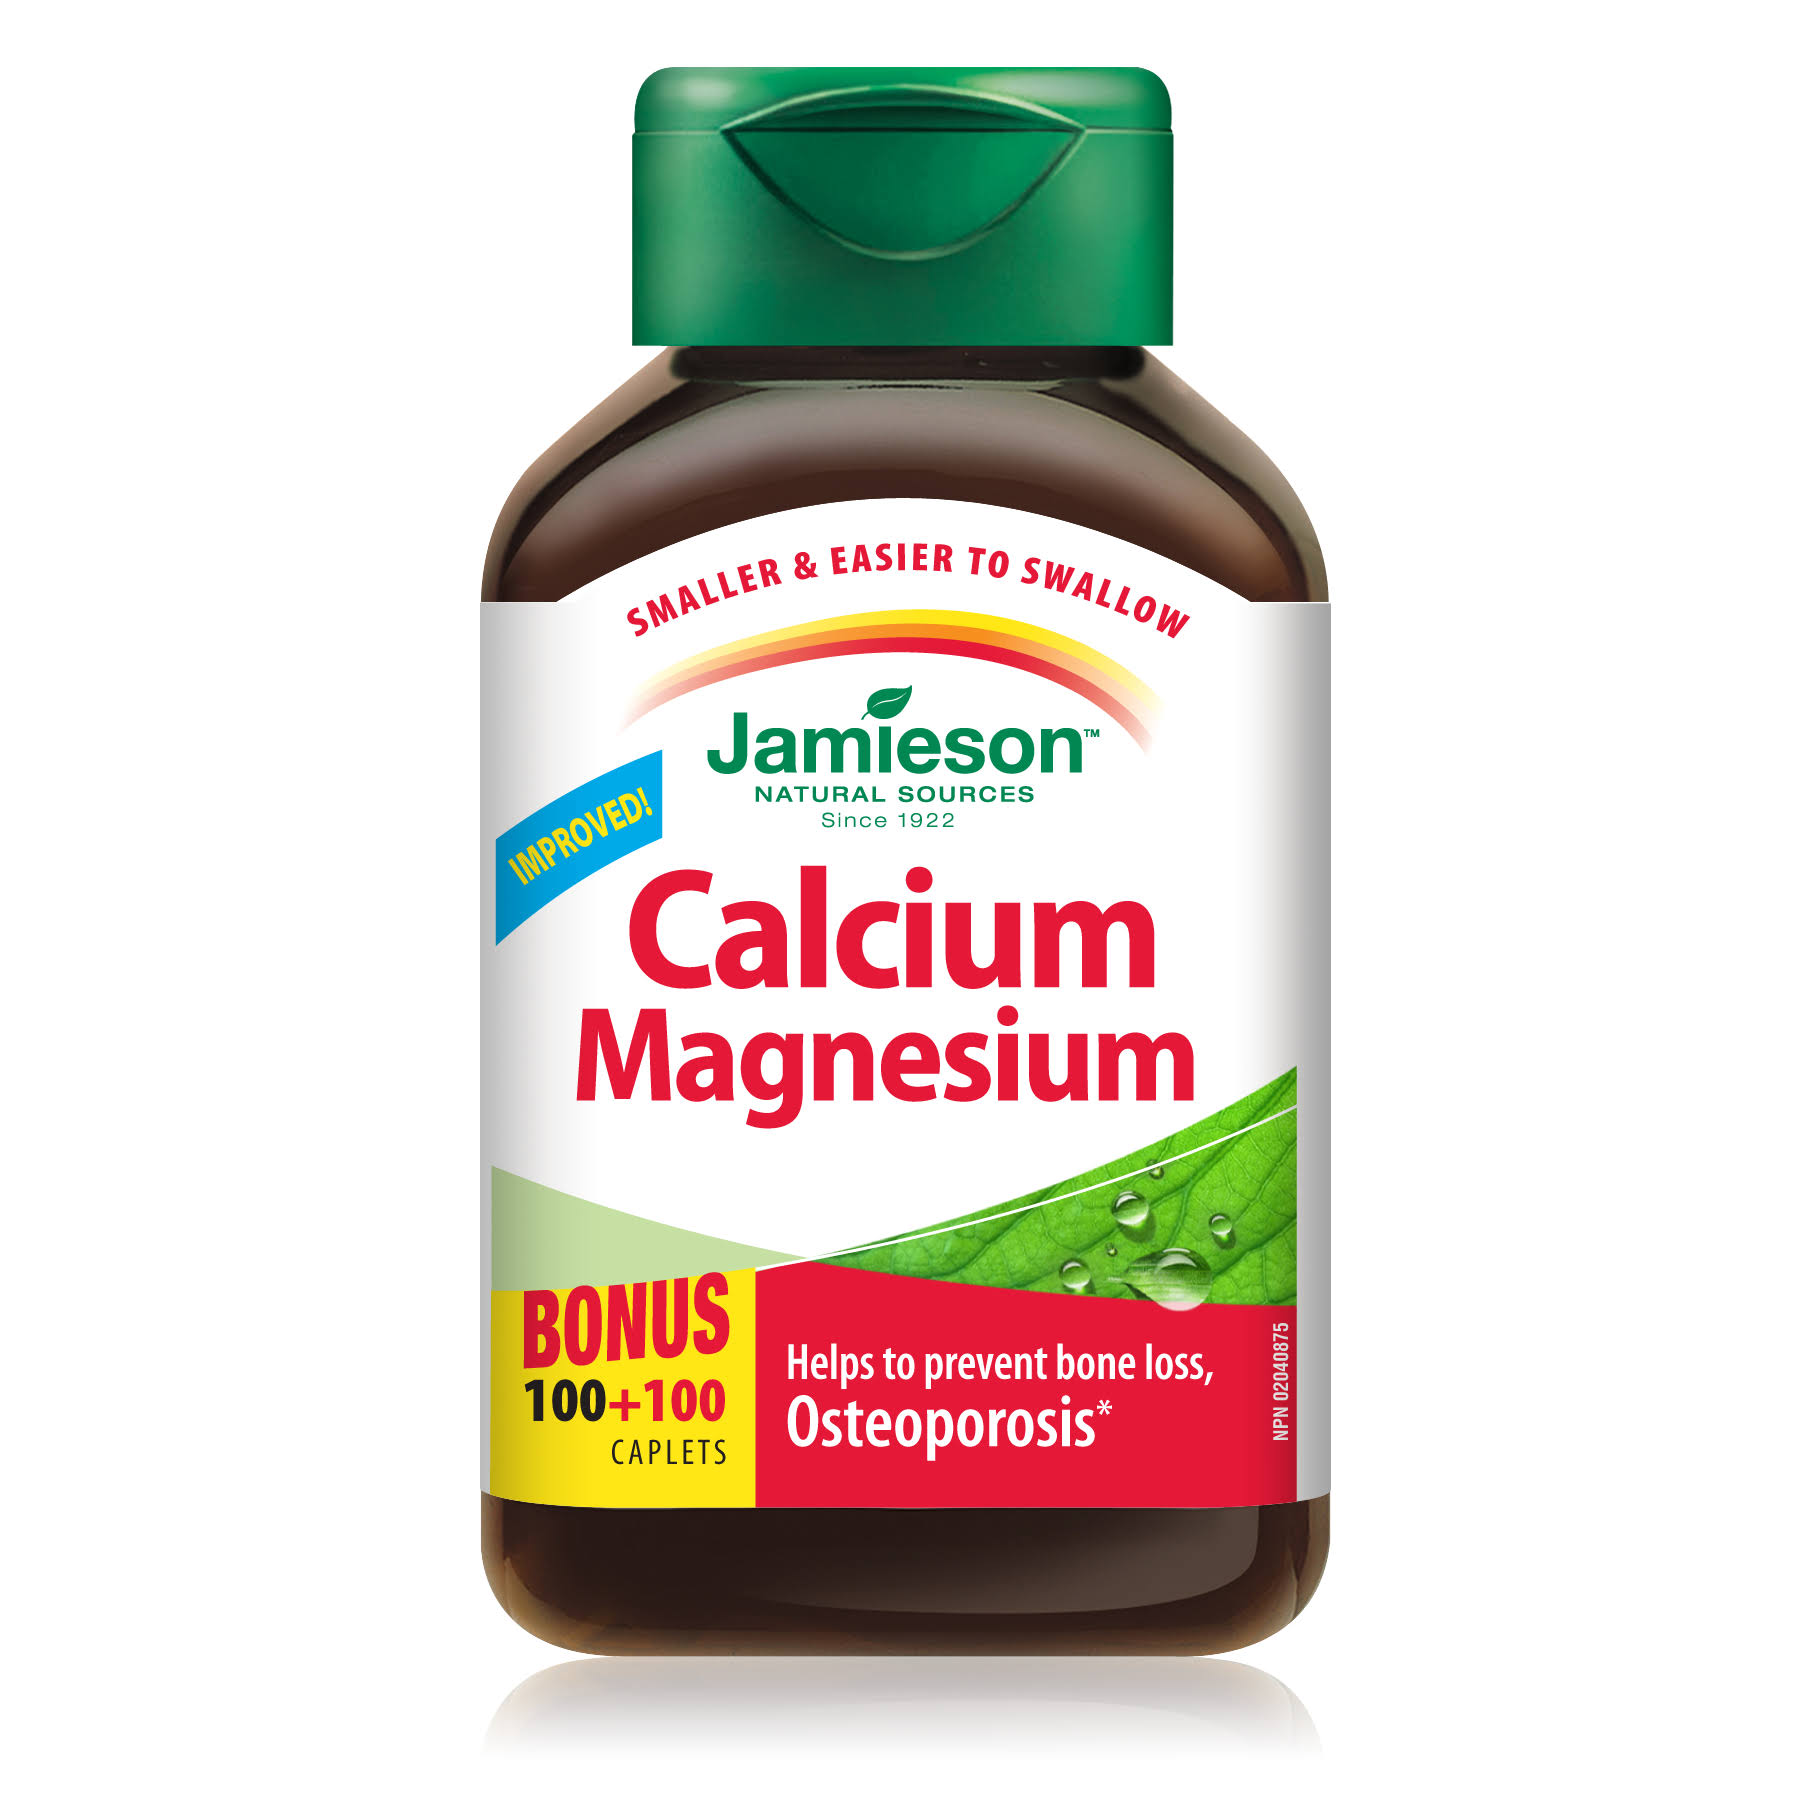 Jamieson Natural Sources Calcium Magnesium Dietary Supplement - 200ct